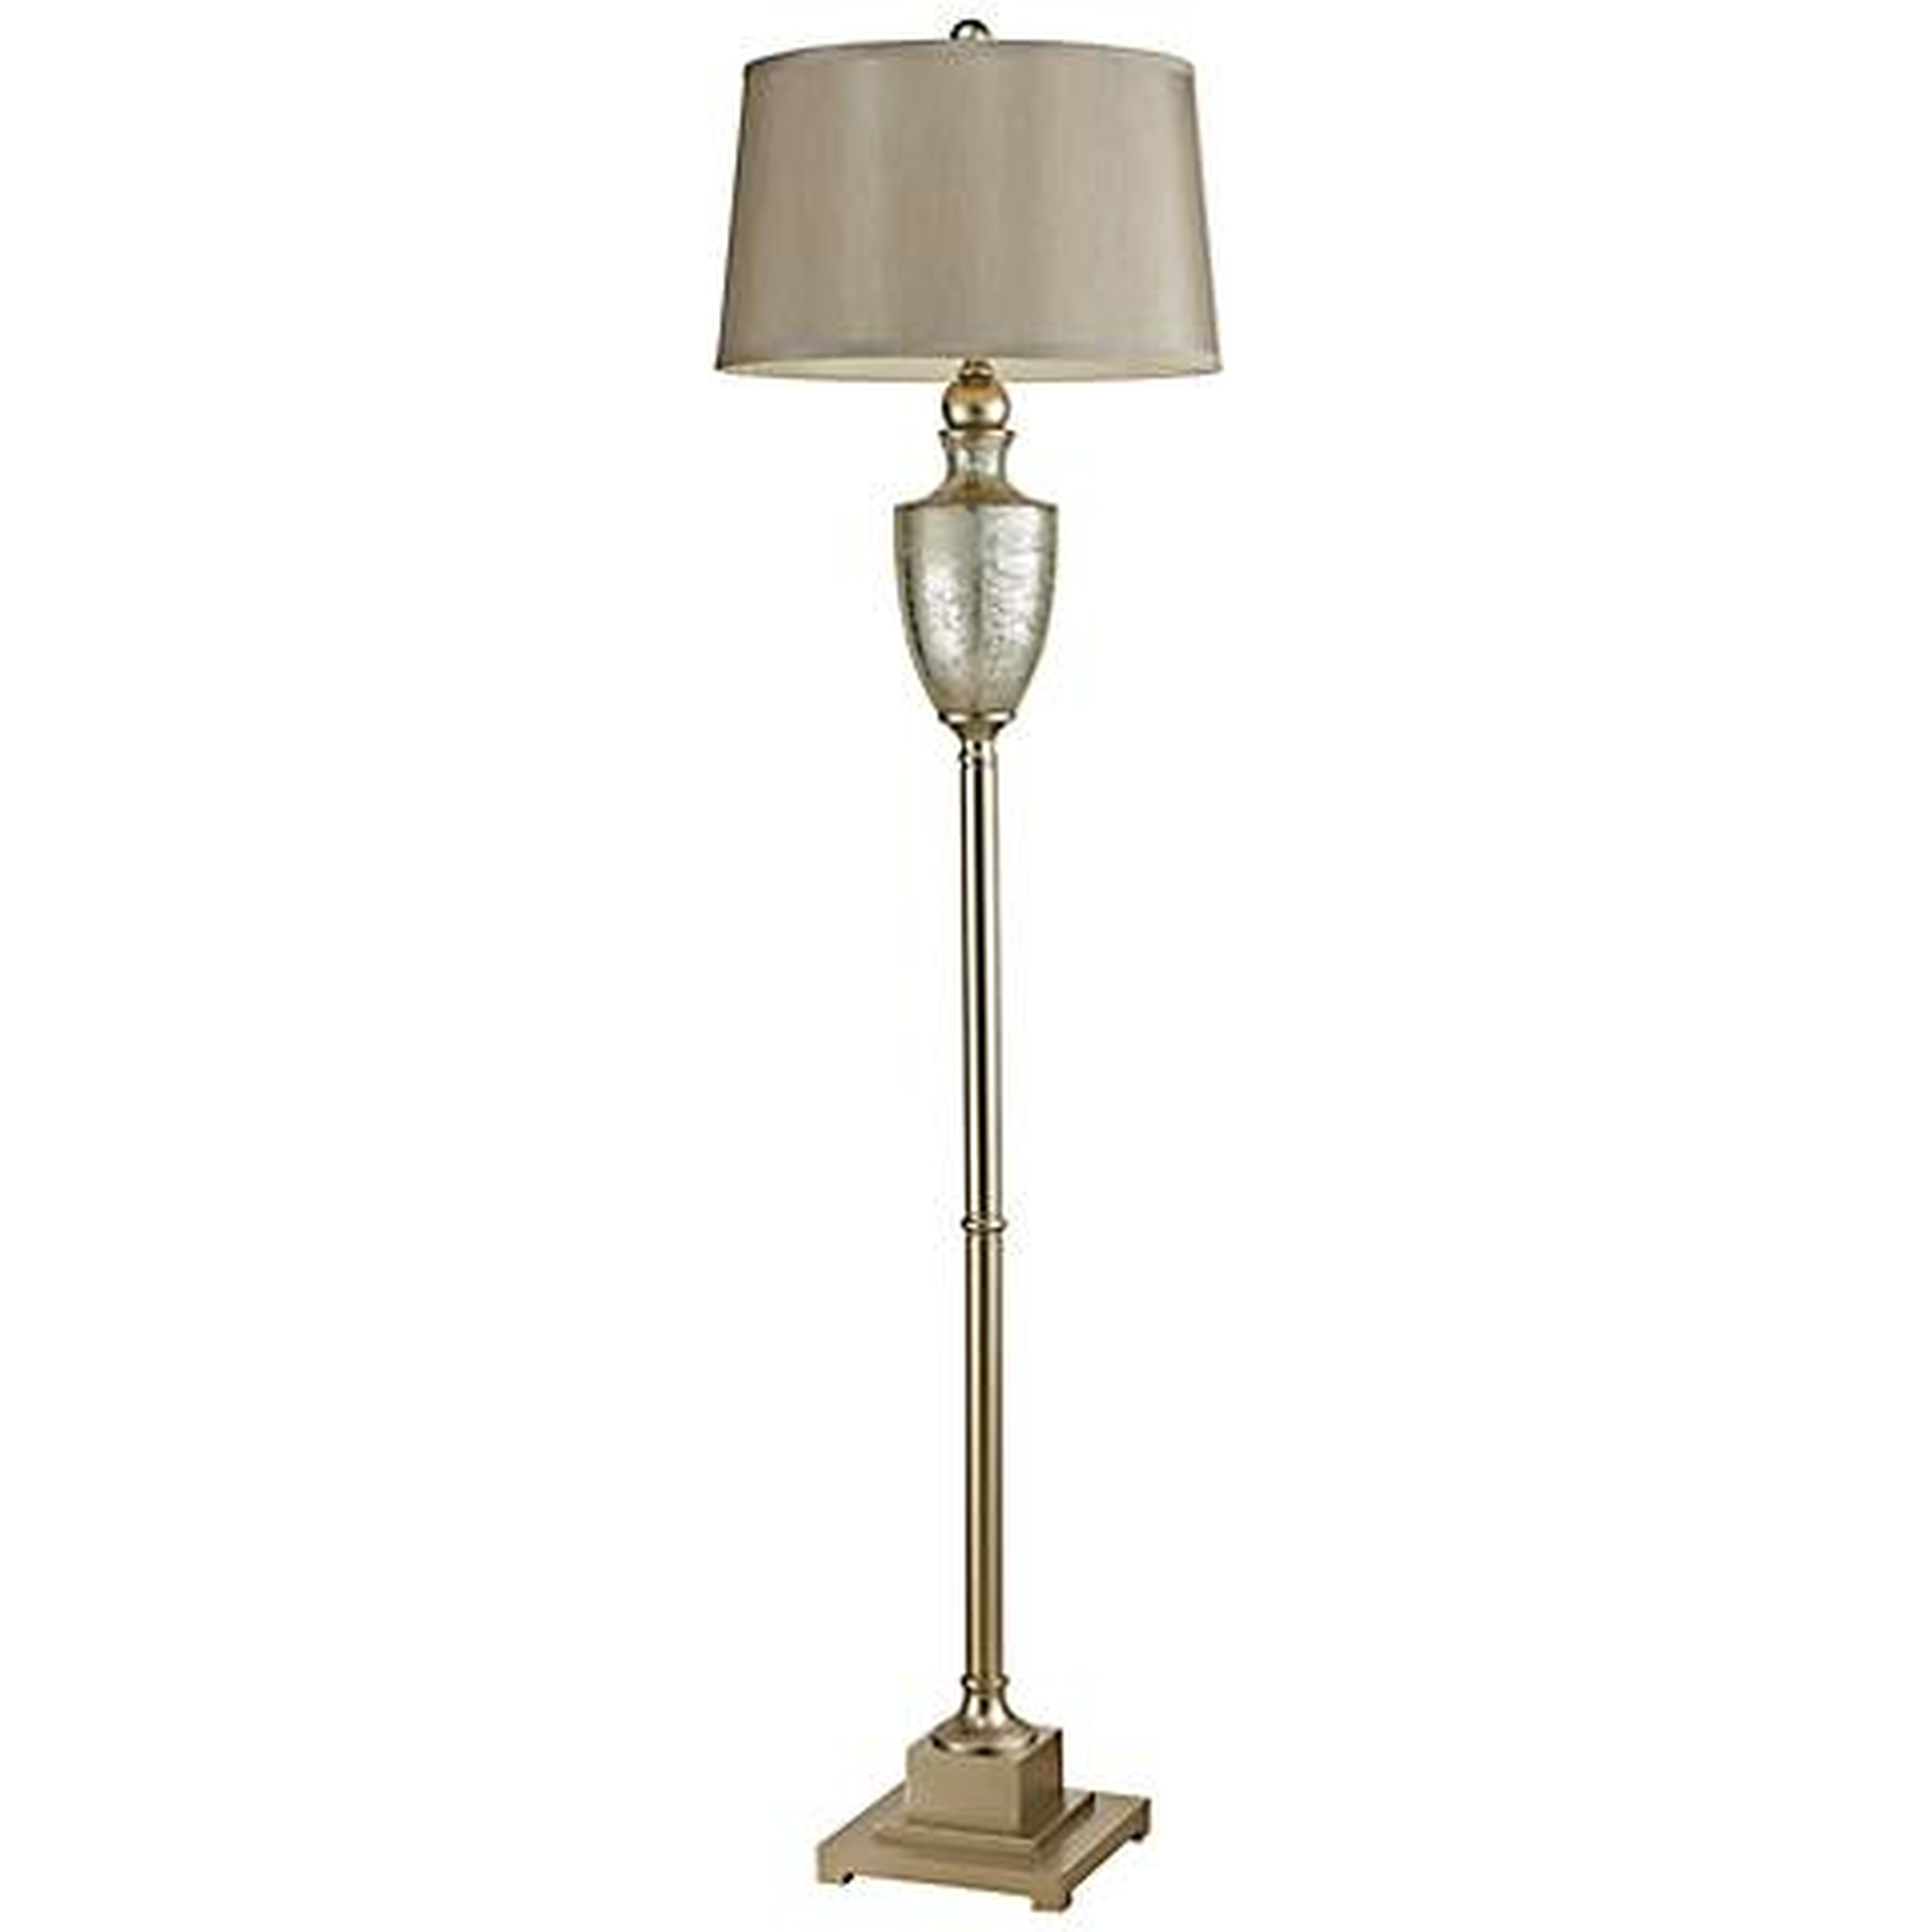 Dimond Antique Mercury Glass Floor Lamp - Lamps Plus